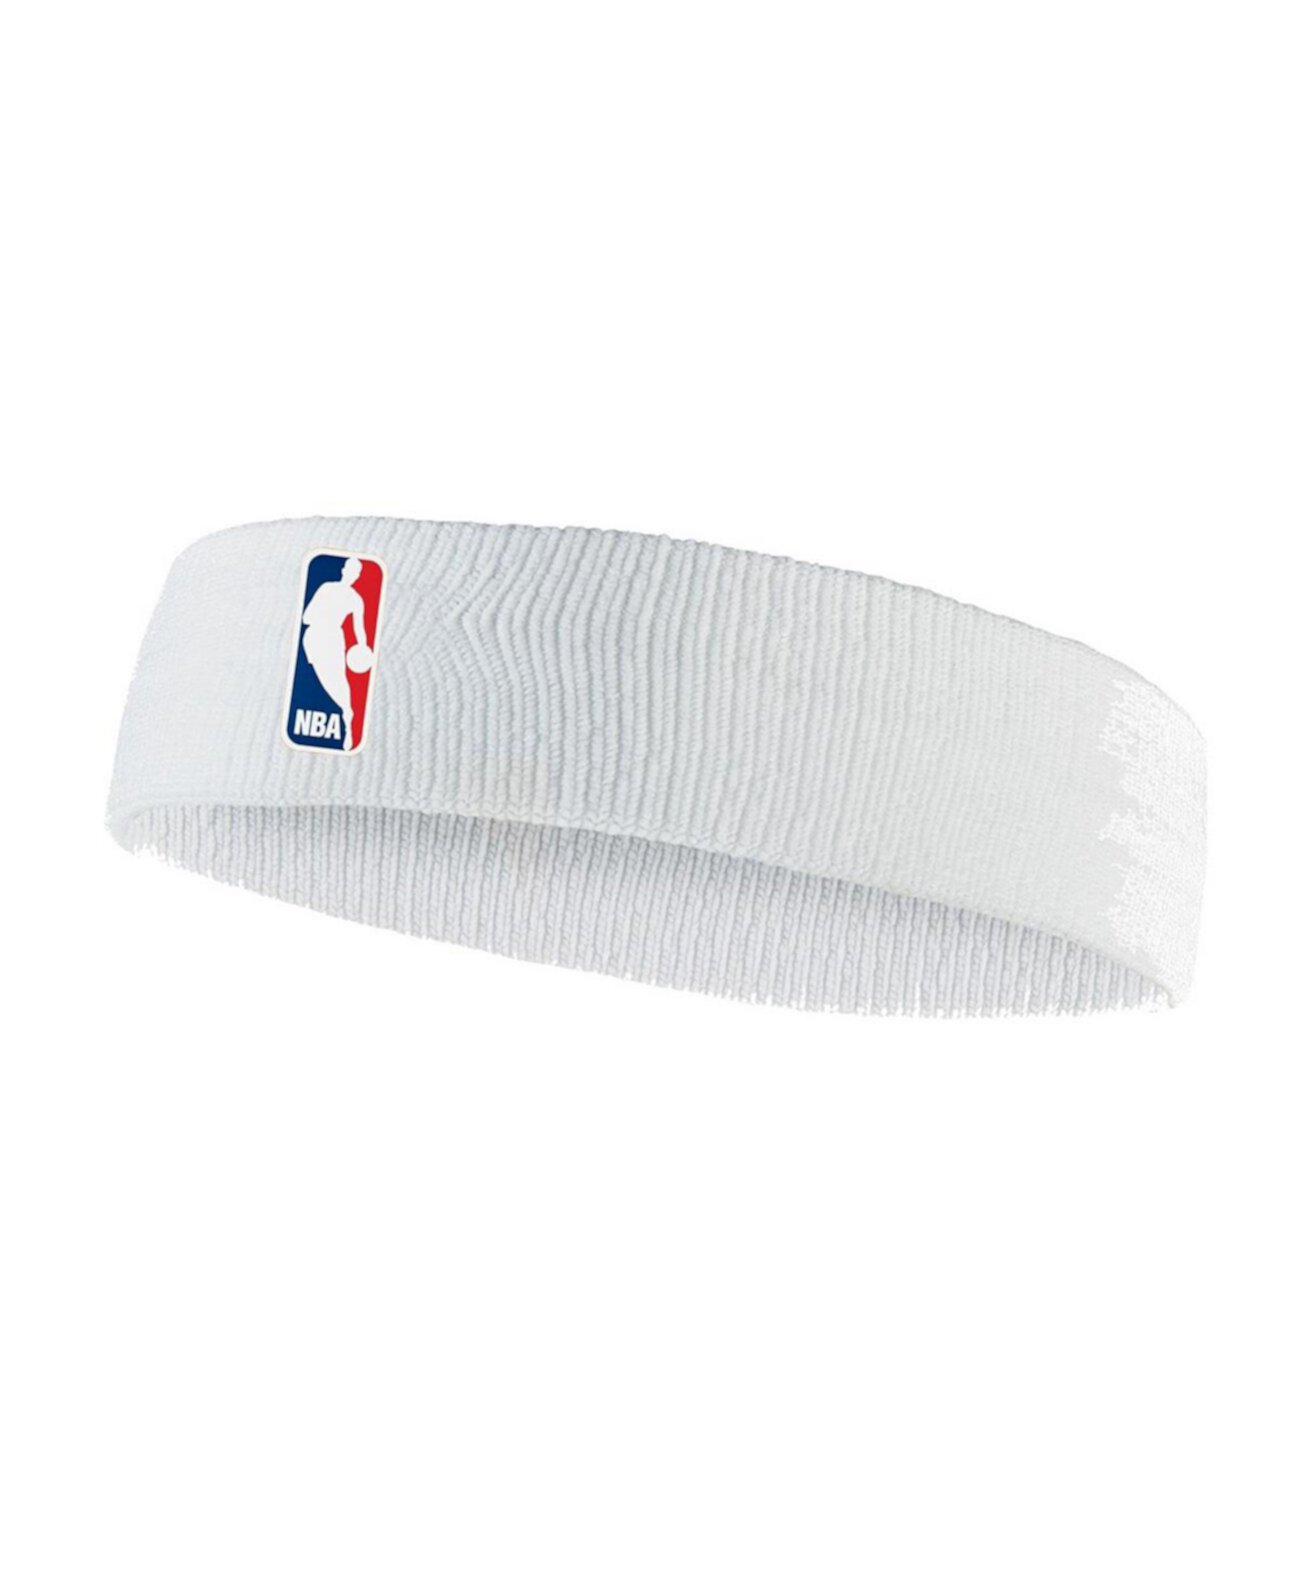 Мужская белая повязка НБА на голову Nike